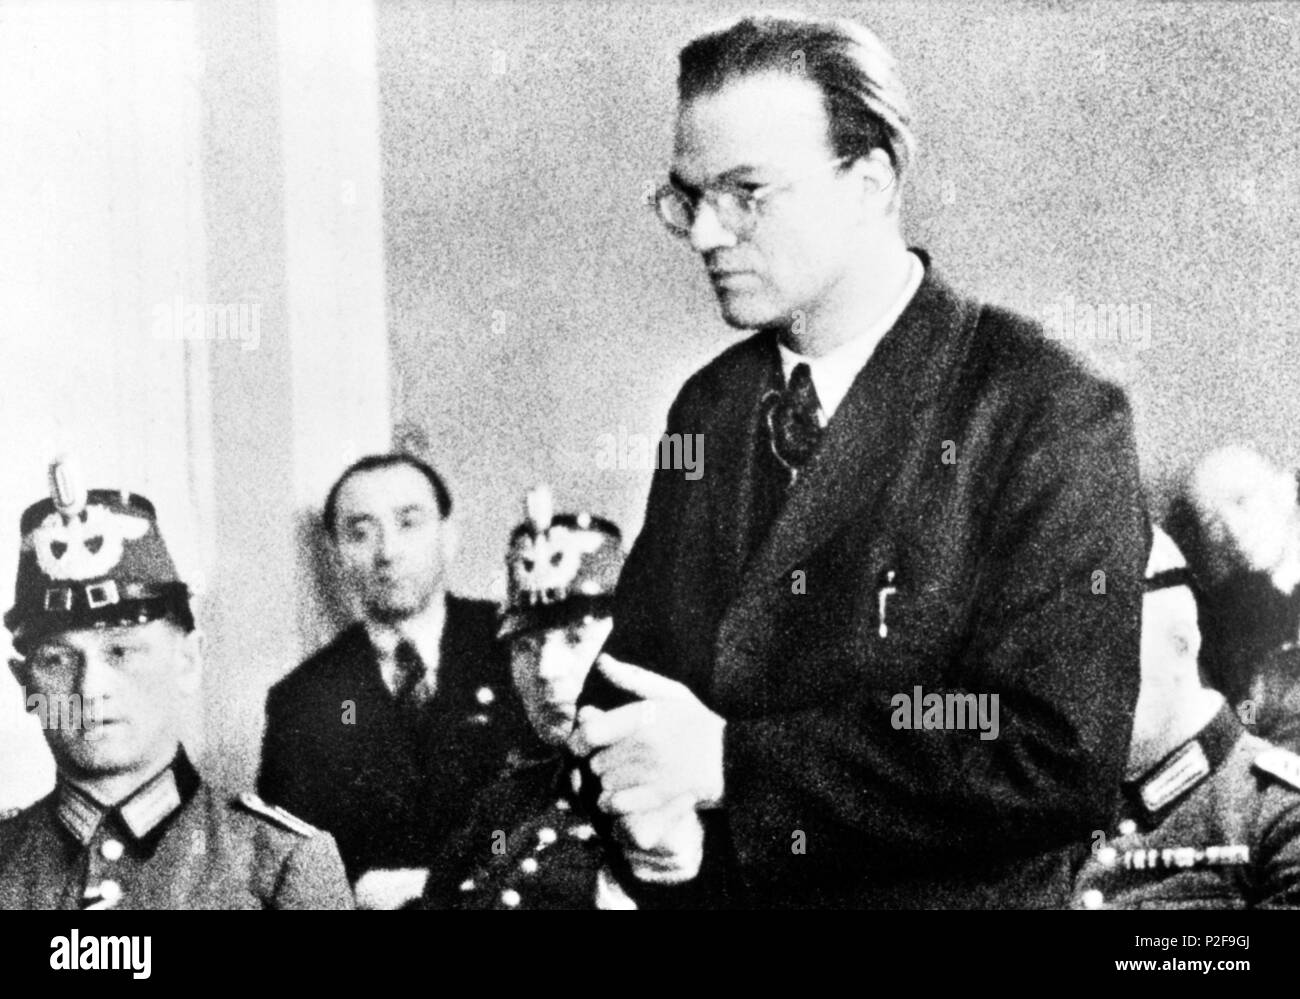 La résistance allemande : prêtre jésuite allemand Alfred Delp, pendu par les Nazis pour sa part en résistance catholique mouvement anti-hitlérienne. Banque D'Images